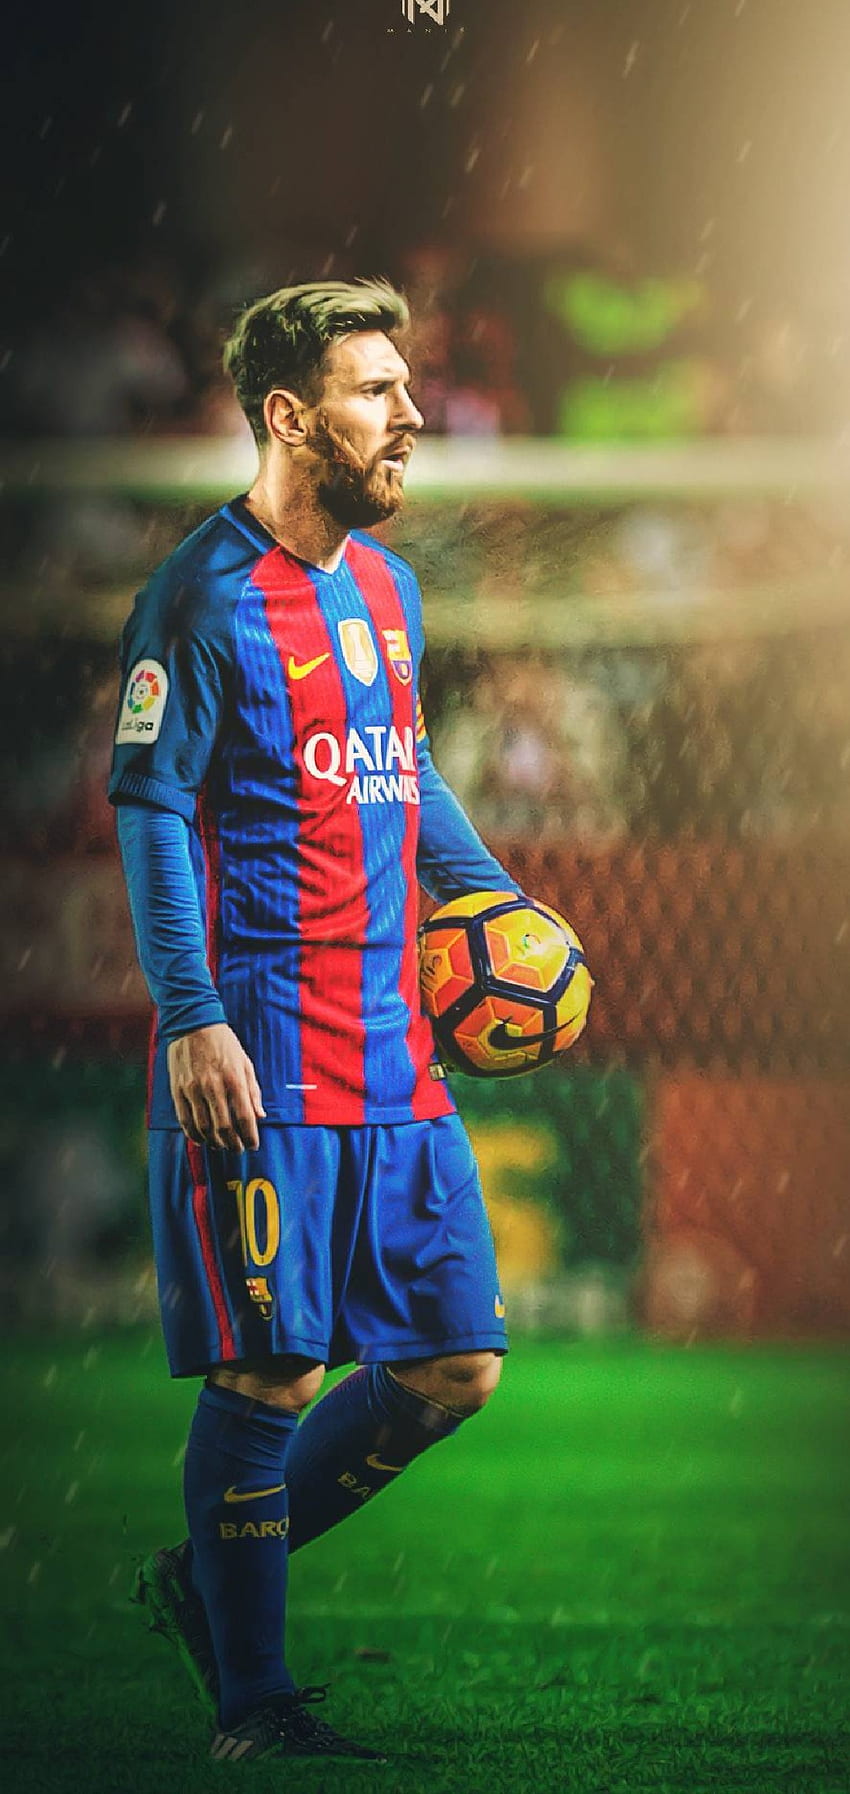 Nếu bạn đang sở hữu một chiếc iPhone, hãy trang trí nó với những hình nền điện thoại của Lionel Messi đầy sức mạnh và tinh tế. Sự kết hợp hoàn hảo giữa tài năng và phong cách làm nên tên tuổi của Messi, và bạn cũng có thể trở thành một fan hâm mộ Messi thật đẳng cấp.